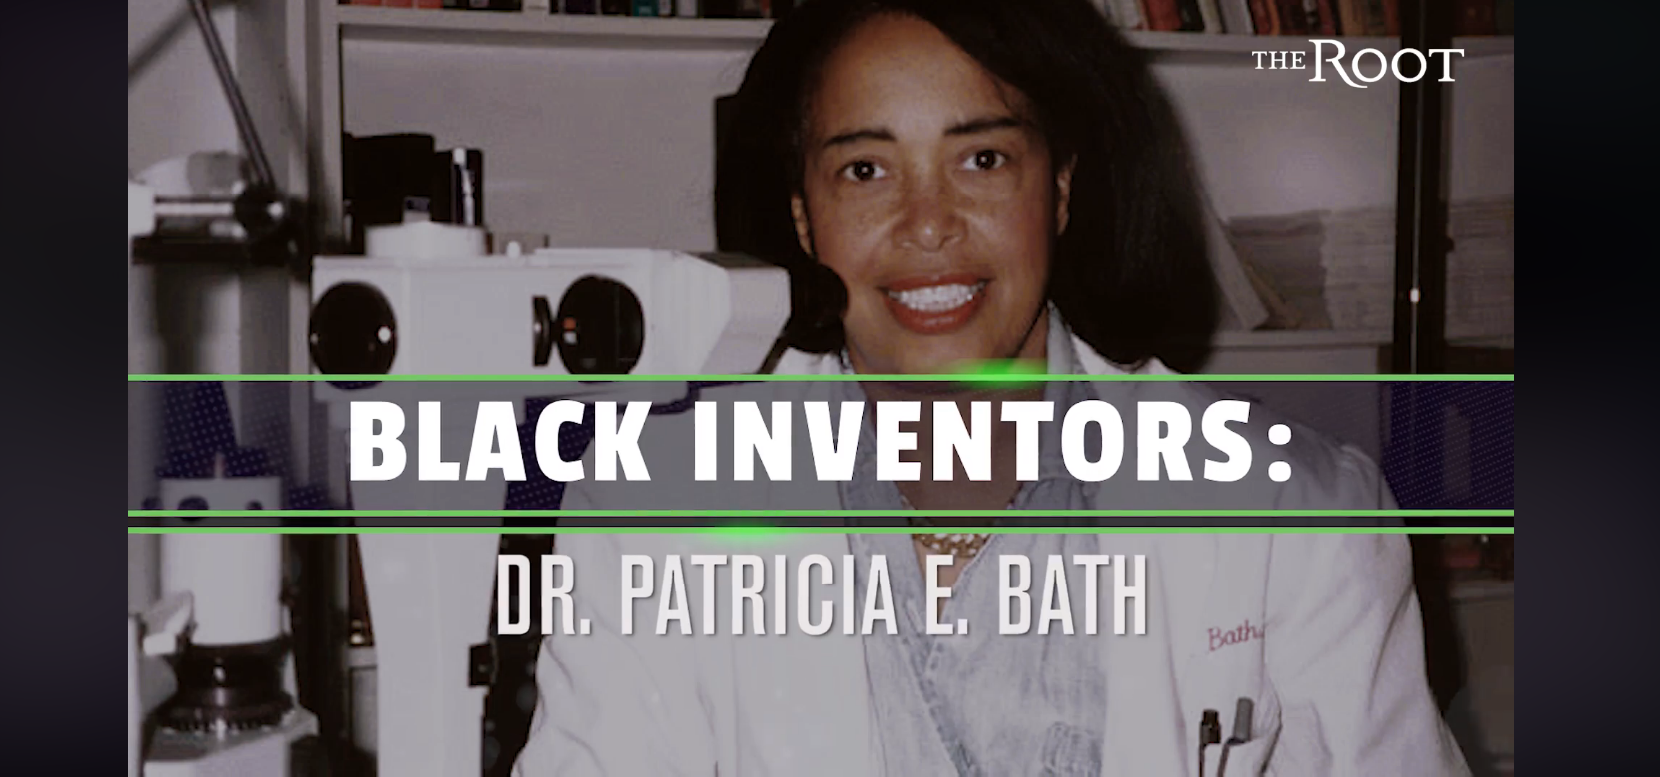 The Root : Black Inventor Spotlight